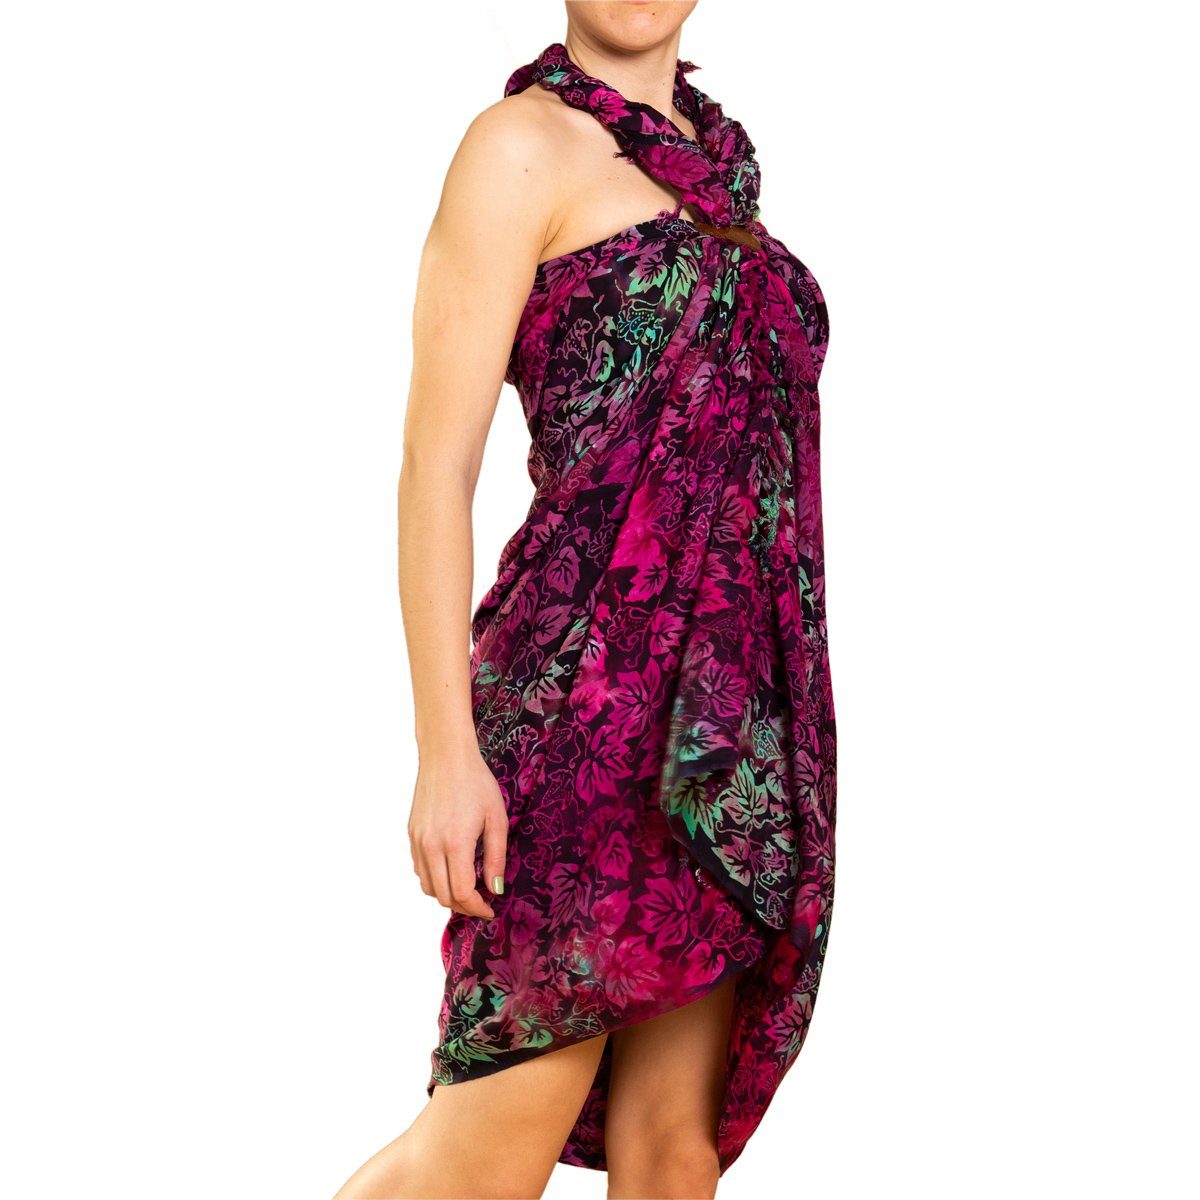 PANASIAM Pareo Sarong Wachsbatik Rottöne aus hochwertiger Viskose Strandtuch, Strandkleid Bikini Cover-up Tuch für den Strand Schultertuch Halstuch B600 purple leaf | Tücher